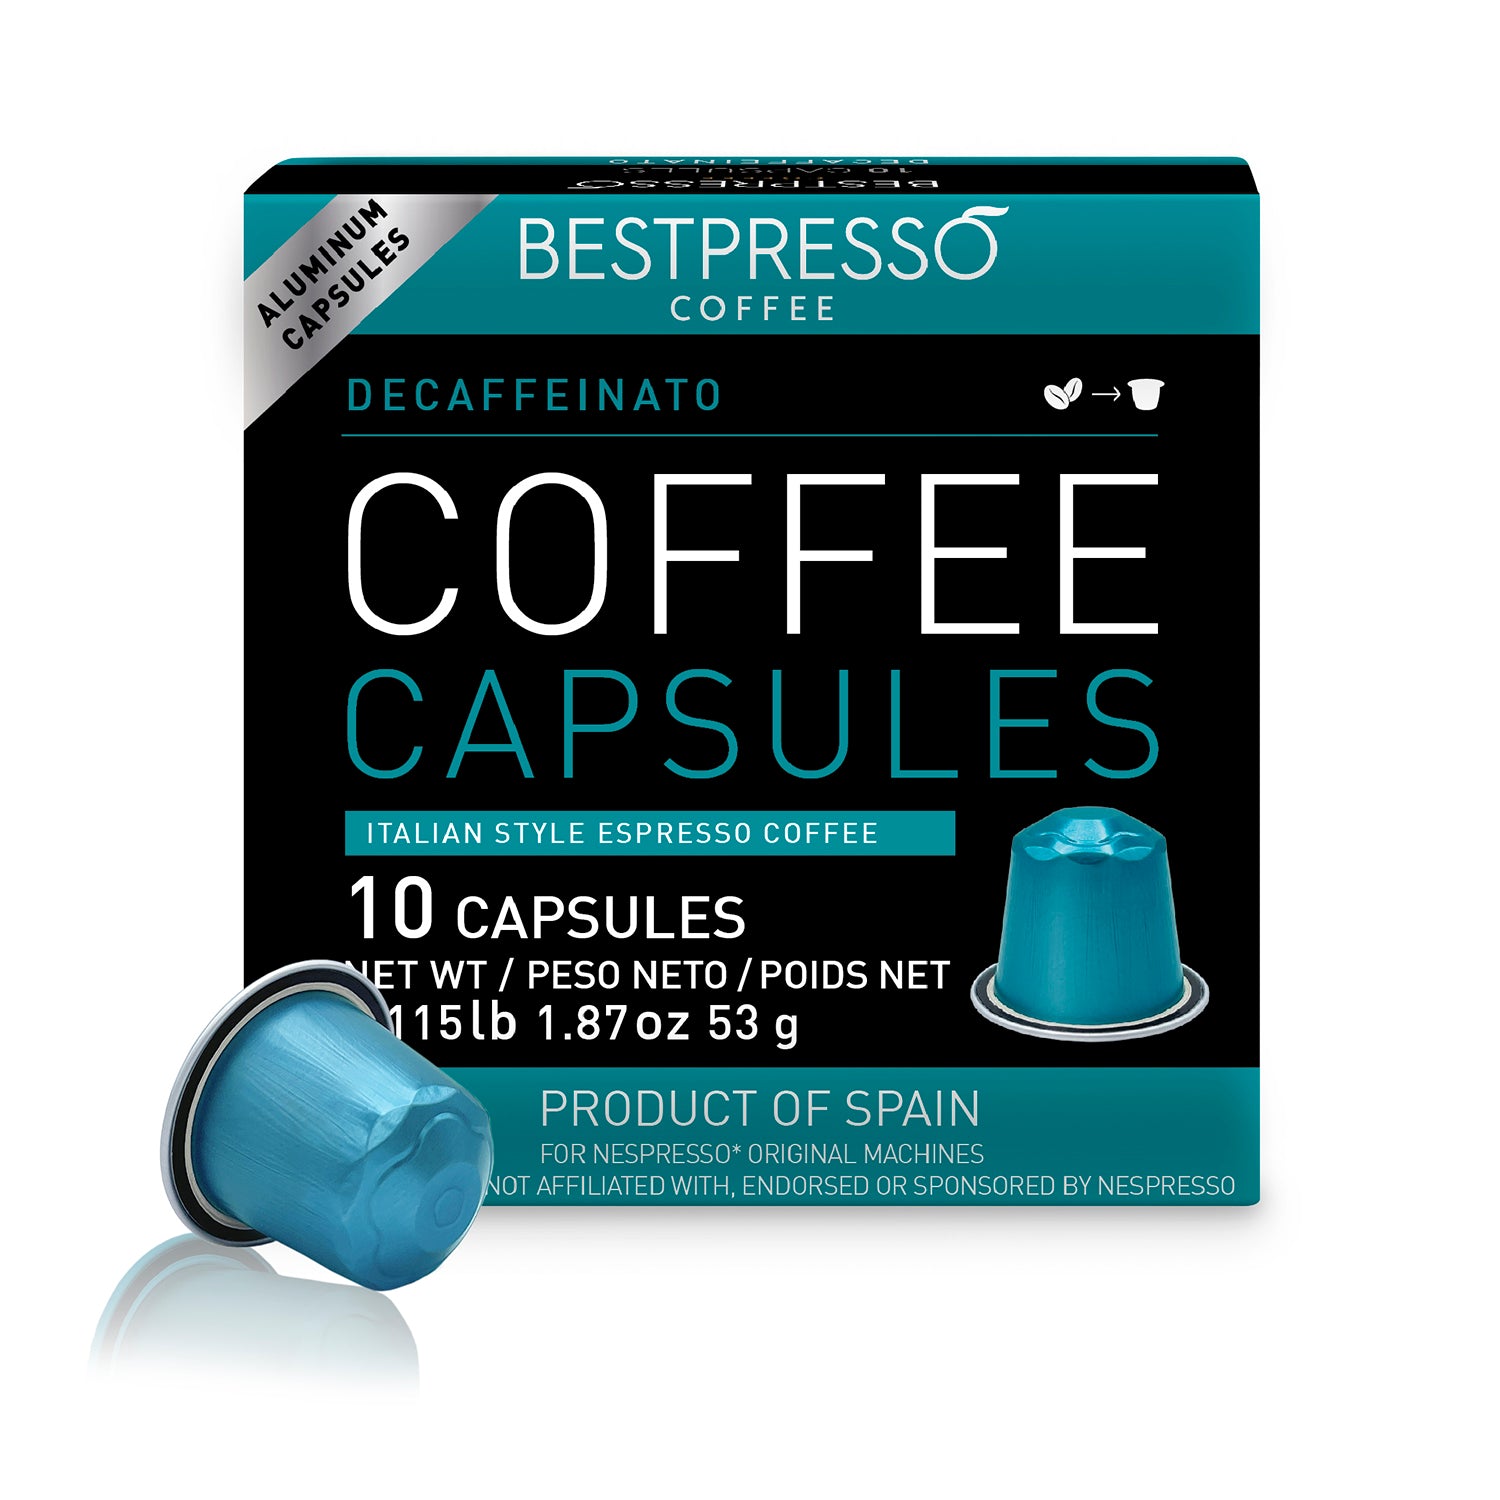 Capsules de café décaféiné - Decaffeinato - L'OR ESPRESSO